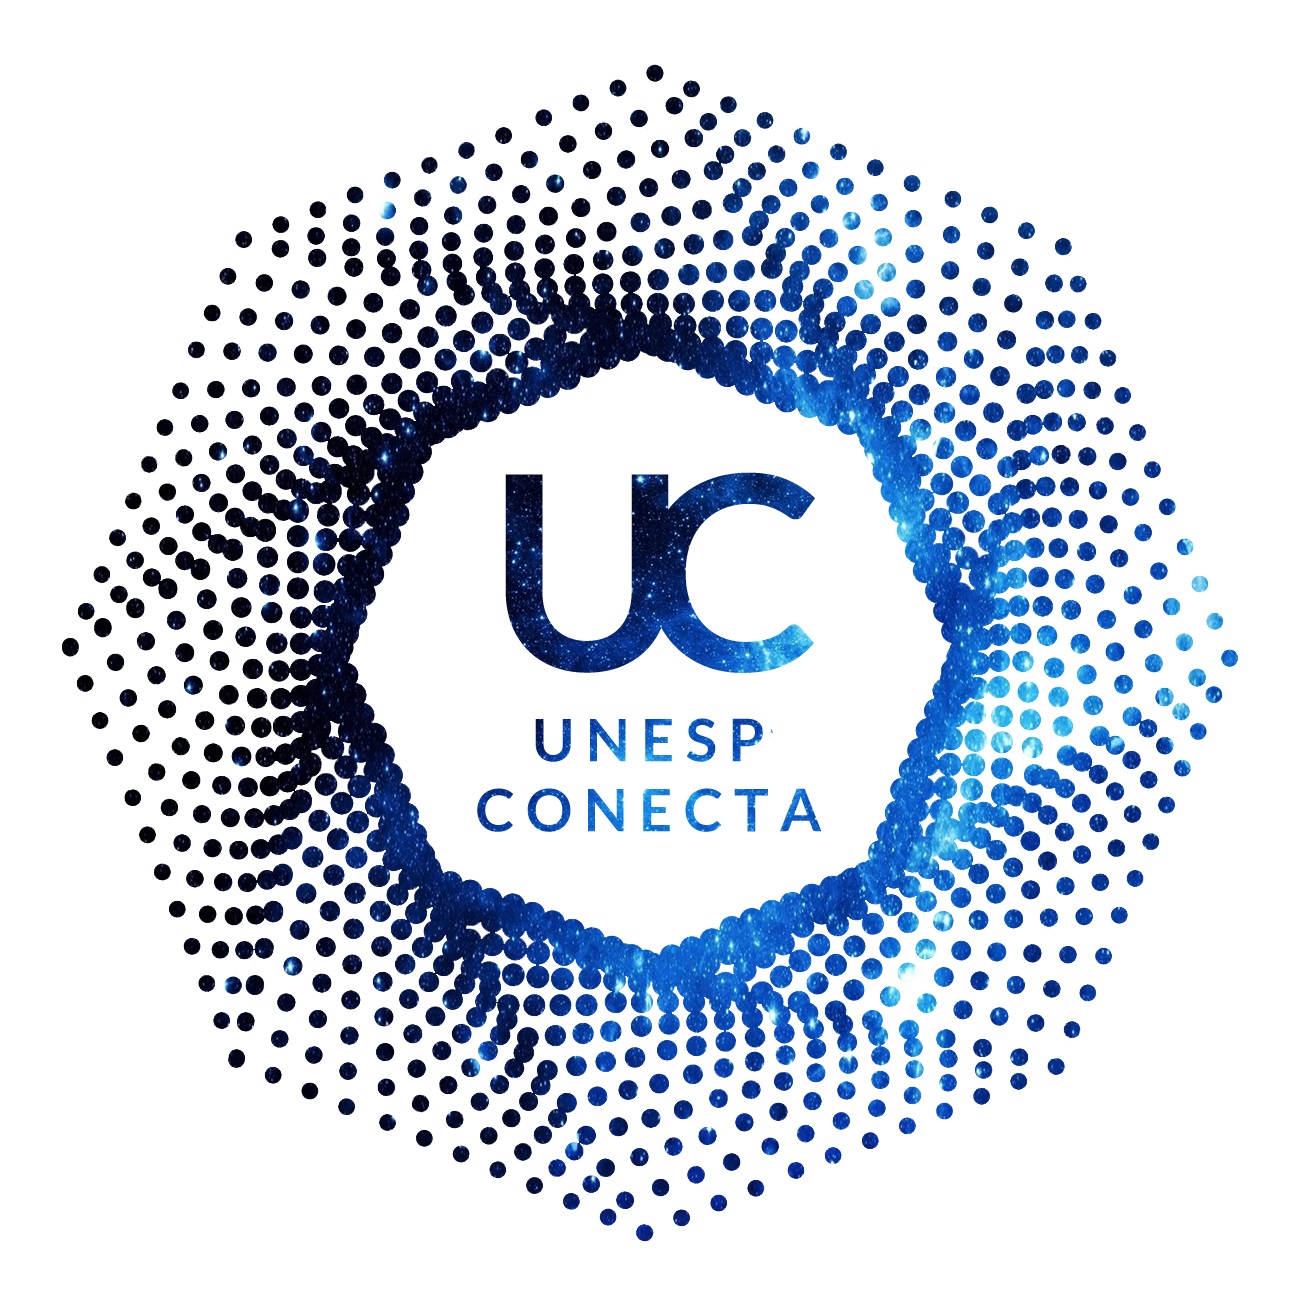 Unesp Conecta 2020 - “Reflexões sobre Inovação, Empoderamento e Empreendedorismo”